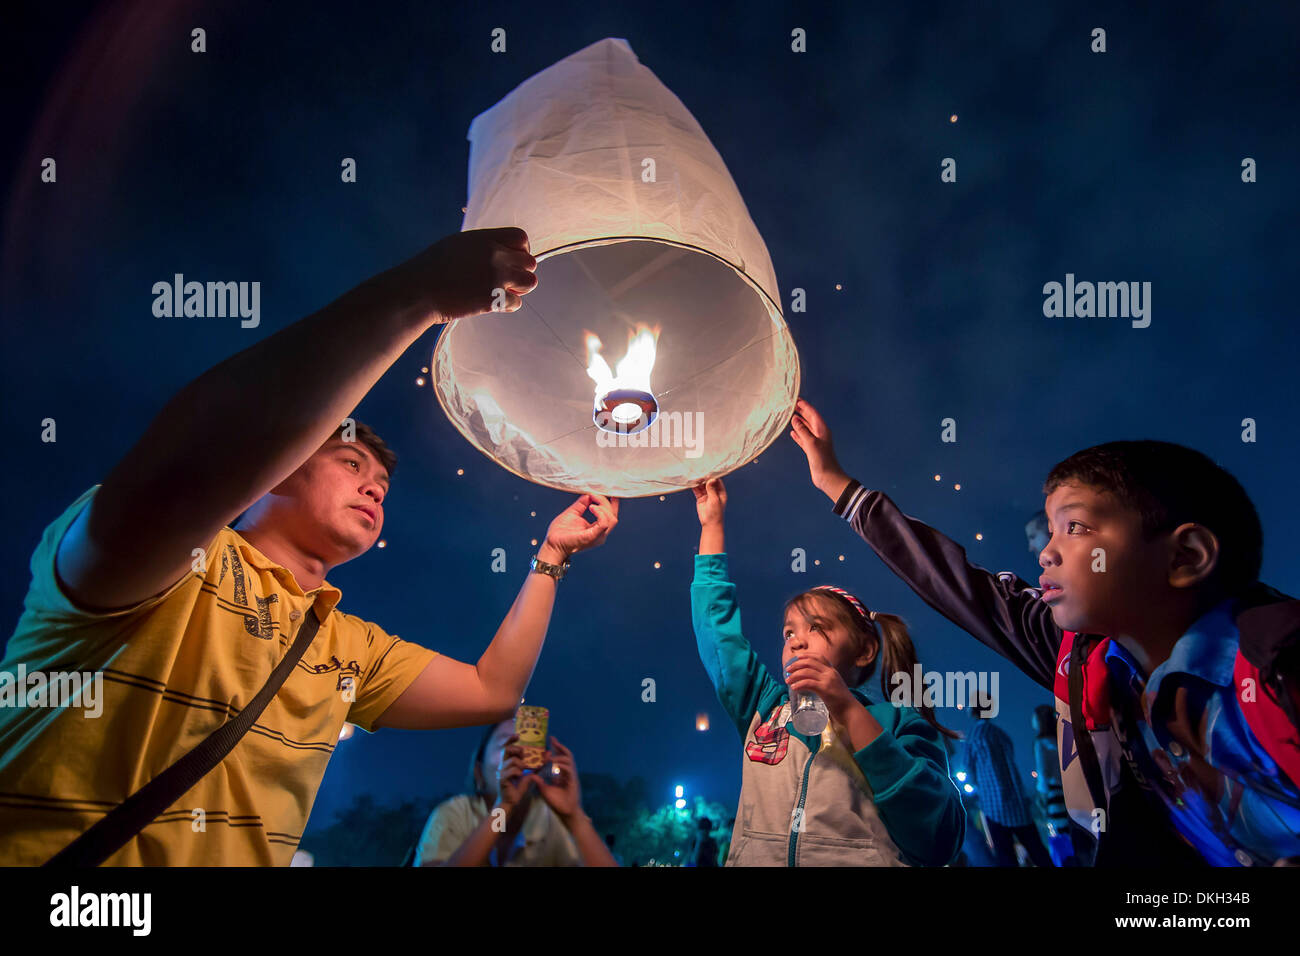 Bangkok, Thaïlande. 5 décembre 2013. Personnes à Bangkok, Thaïlande, célébrer l'anniversaire du roi Bhumibol Adulyadej le 5 décembre 2013. Dpa : Crédit photo alliance/Alamy Live News Banque D'Images